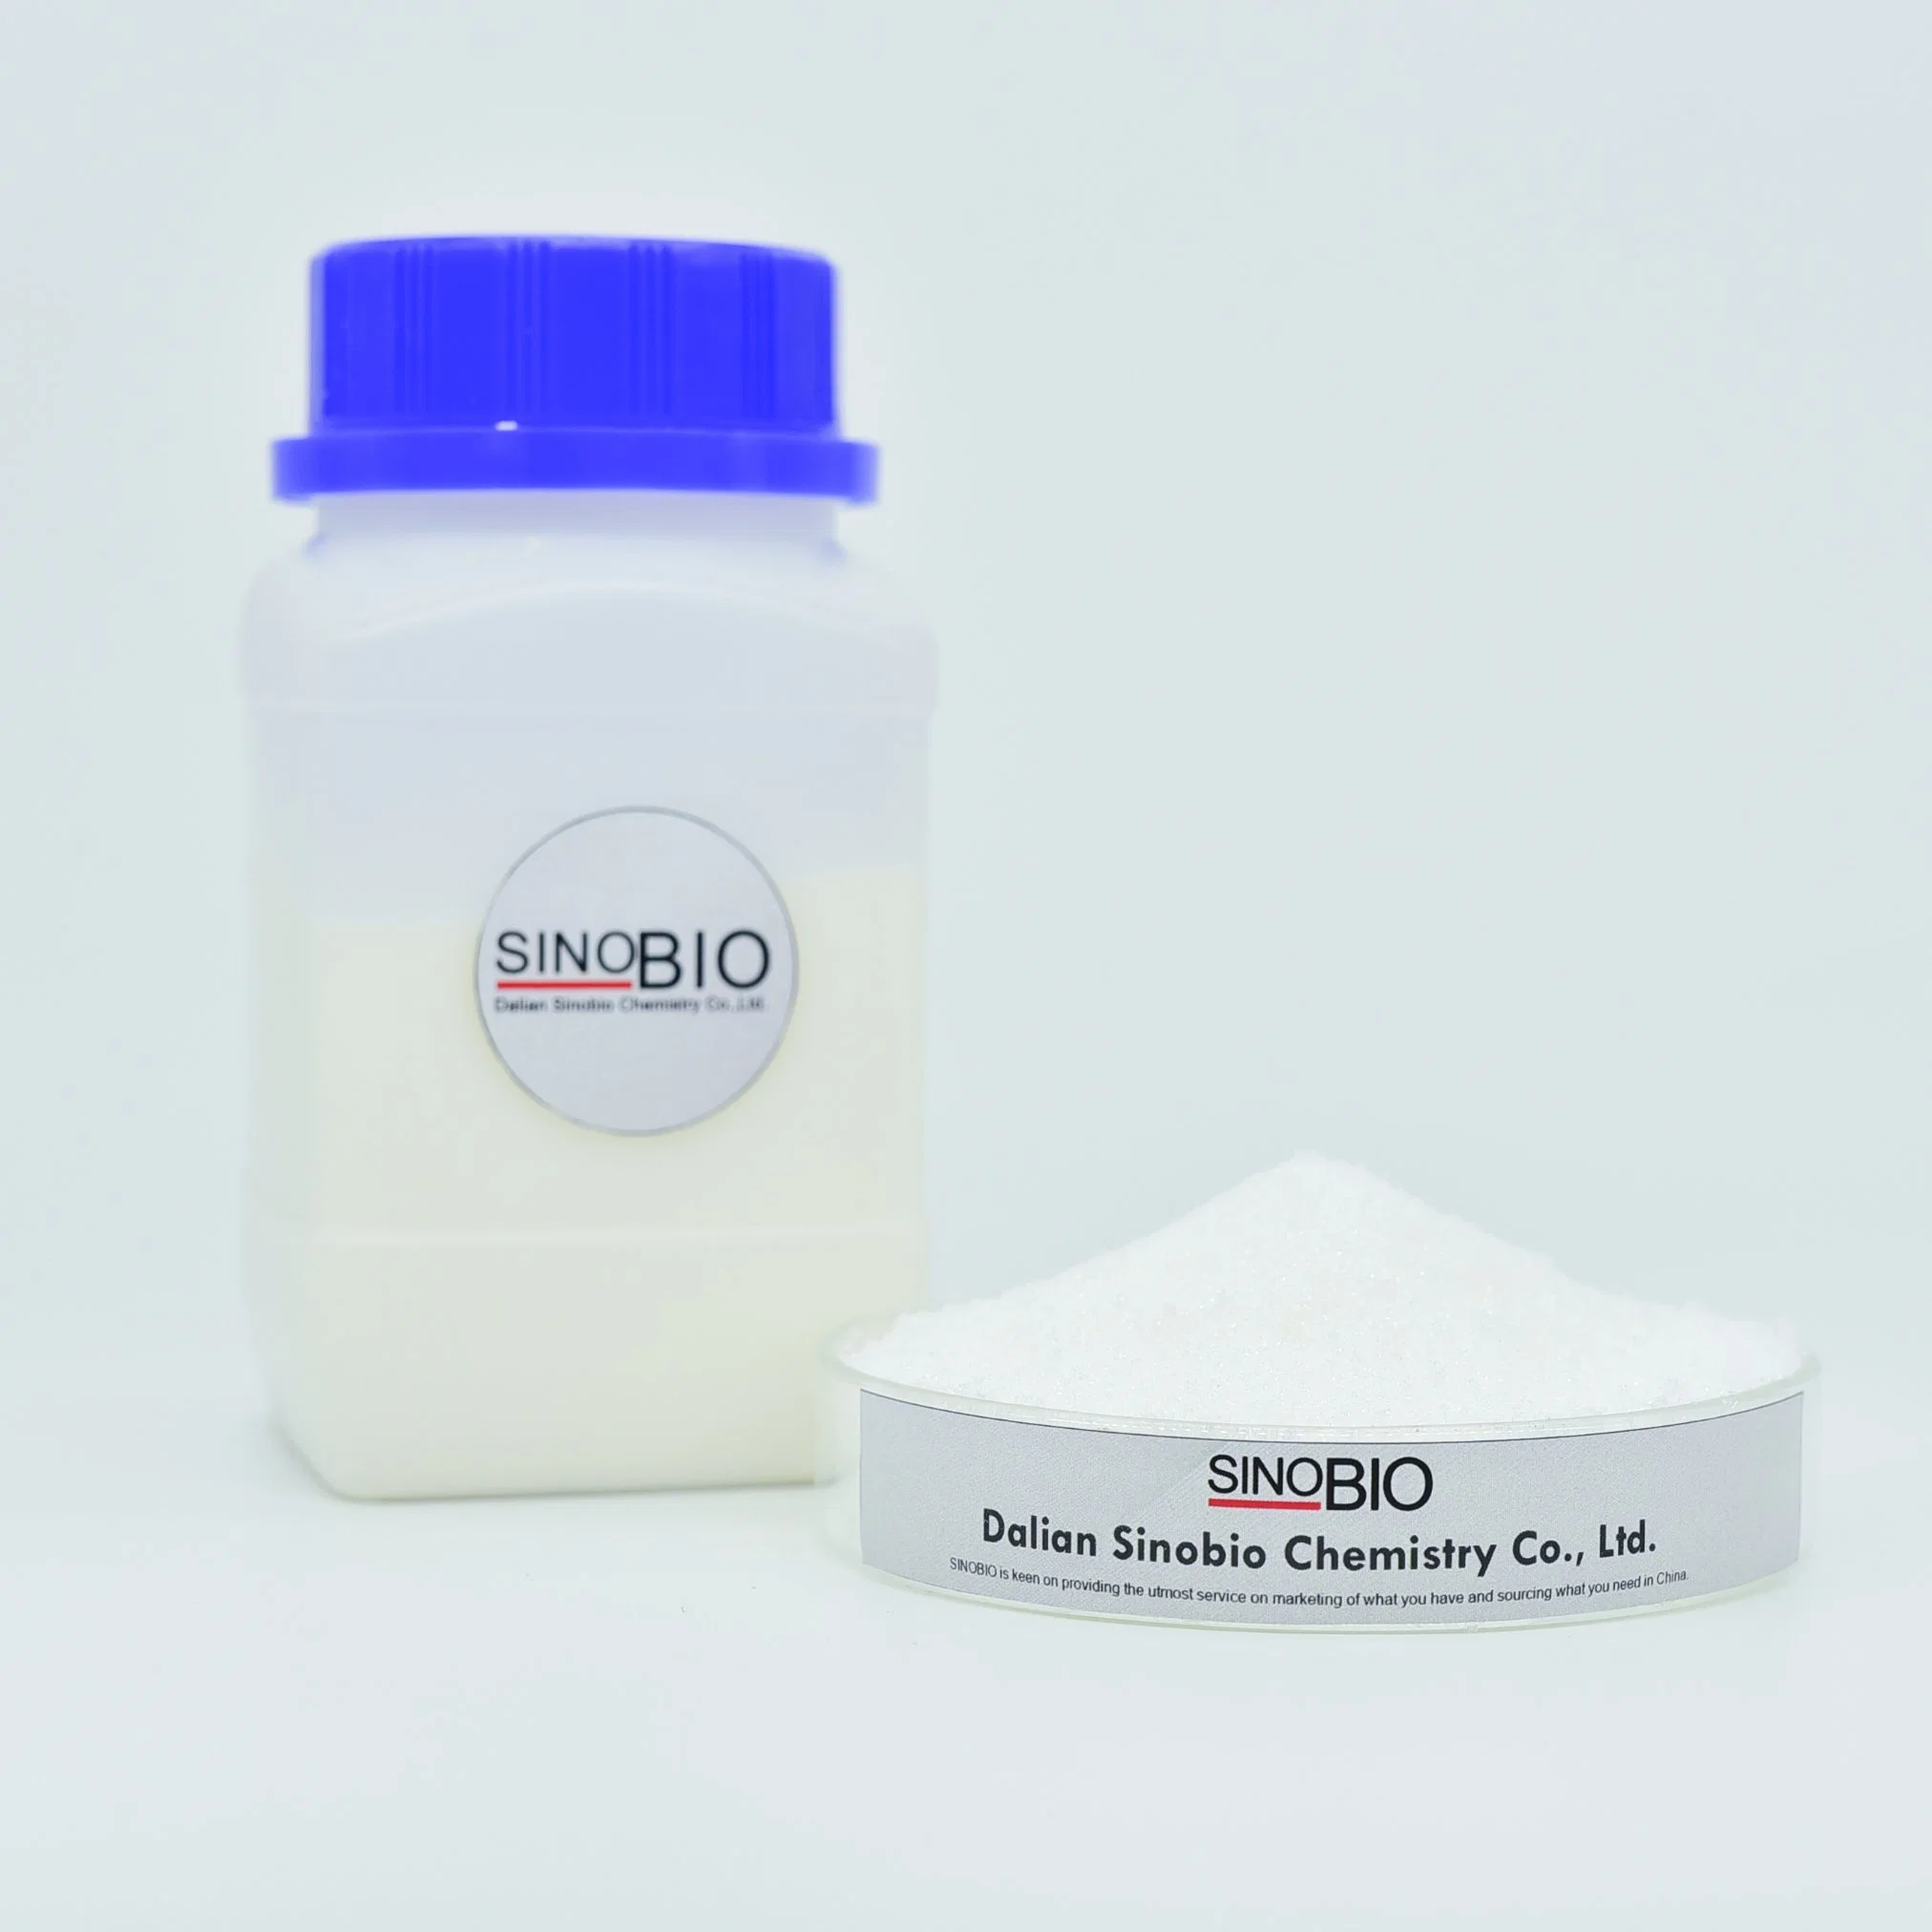 Sinobio Hochwertige chemische medizinische Qualität Salicylsäure Pulver CAS-Nr. 69-72-7